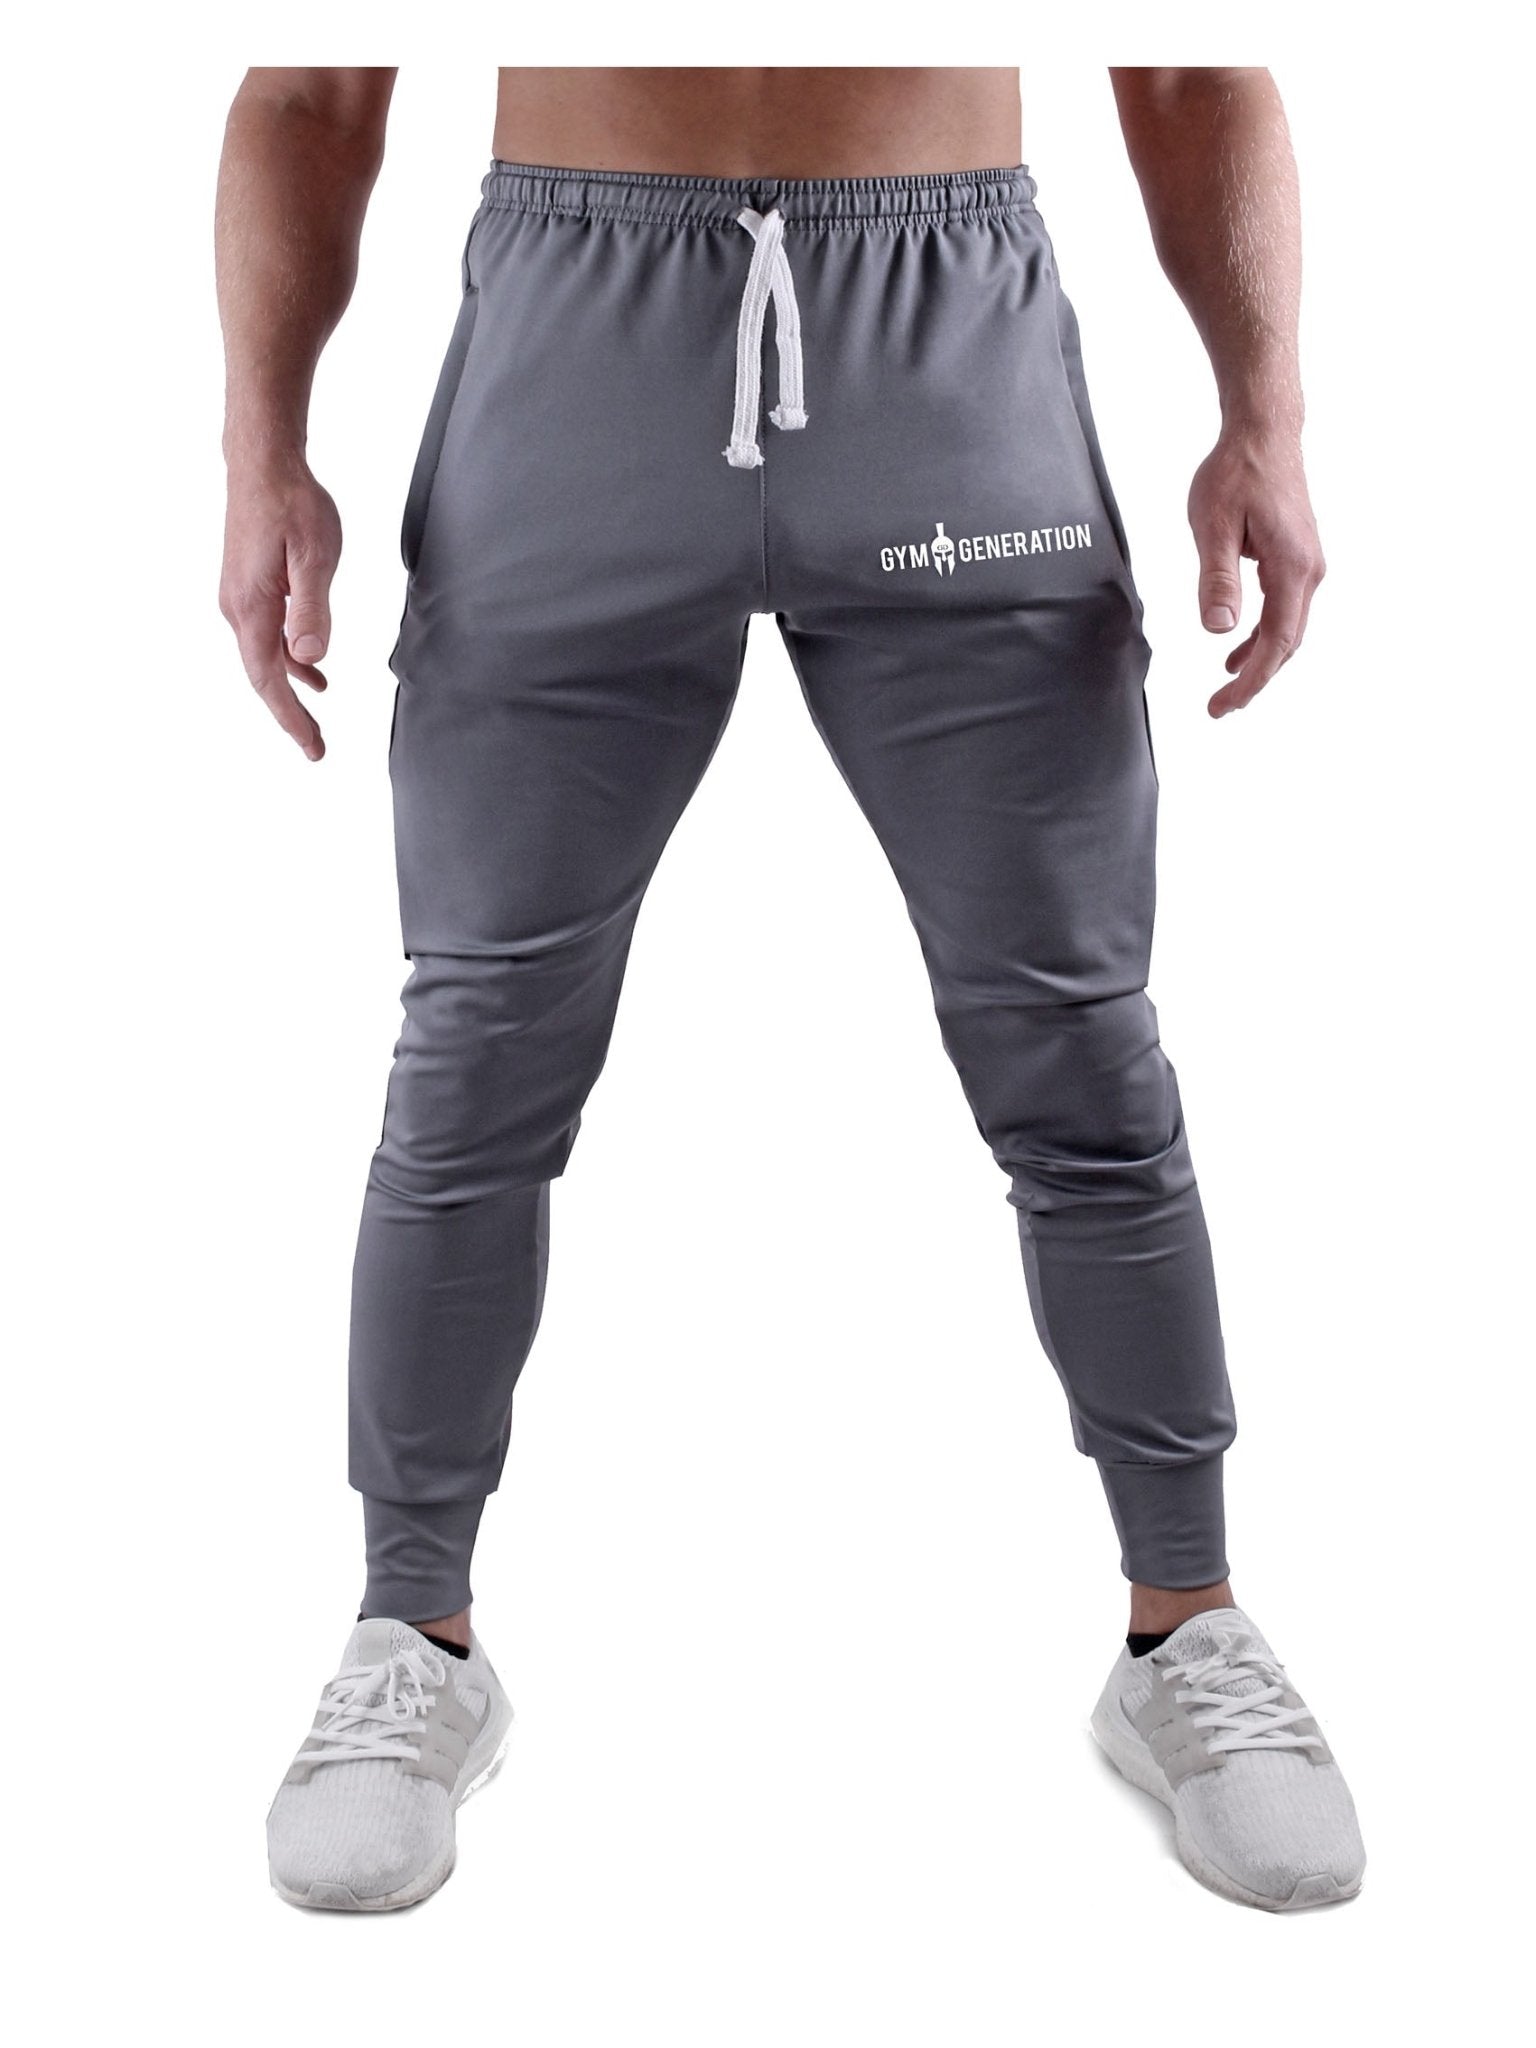 Pantalones deportivos y de entrenamiento para hombre | Pantalón de gimnasia en gris – Gym